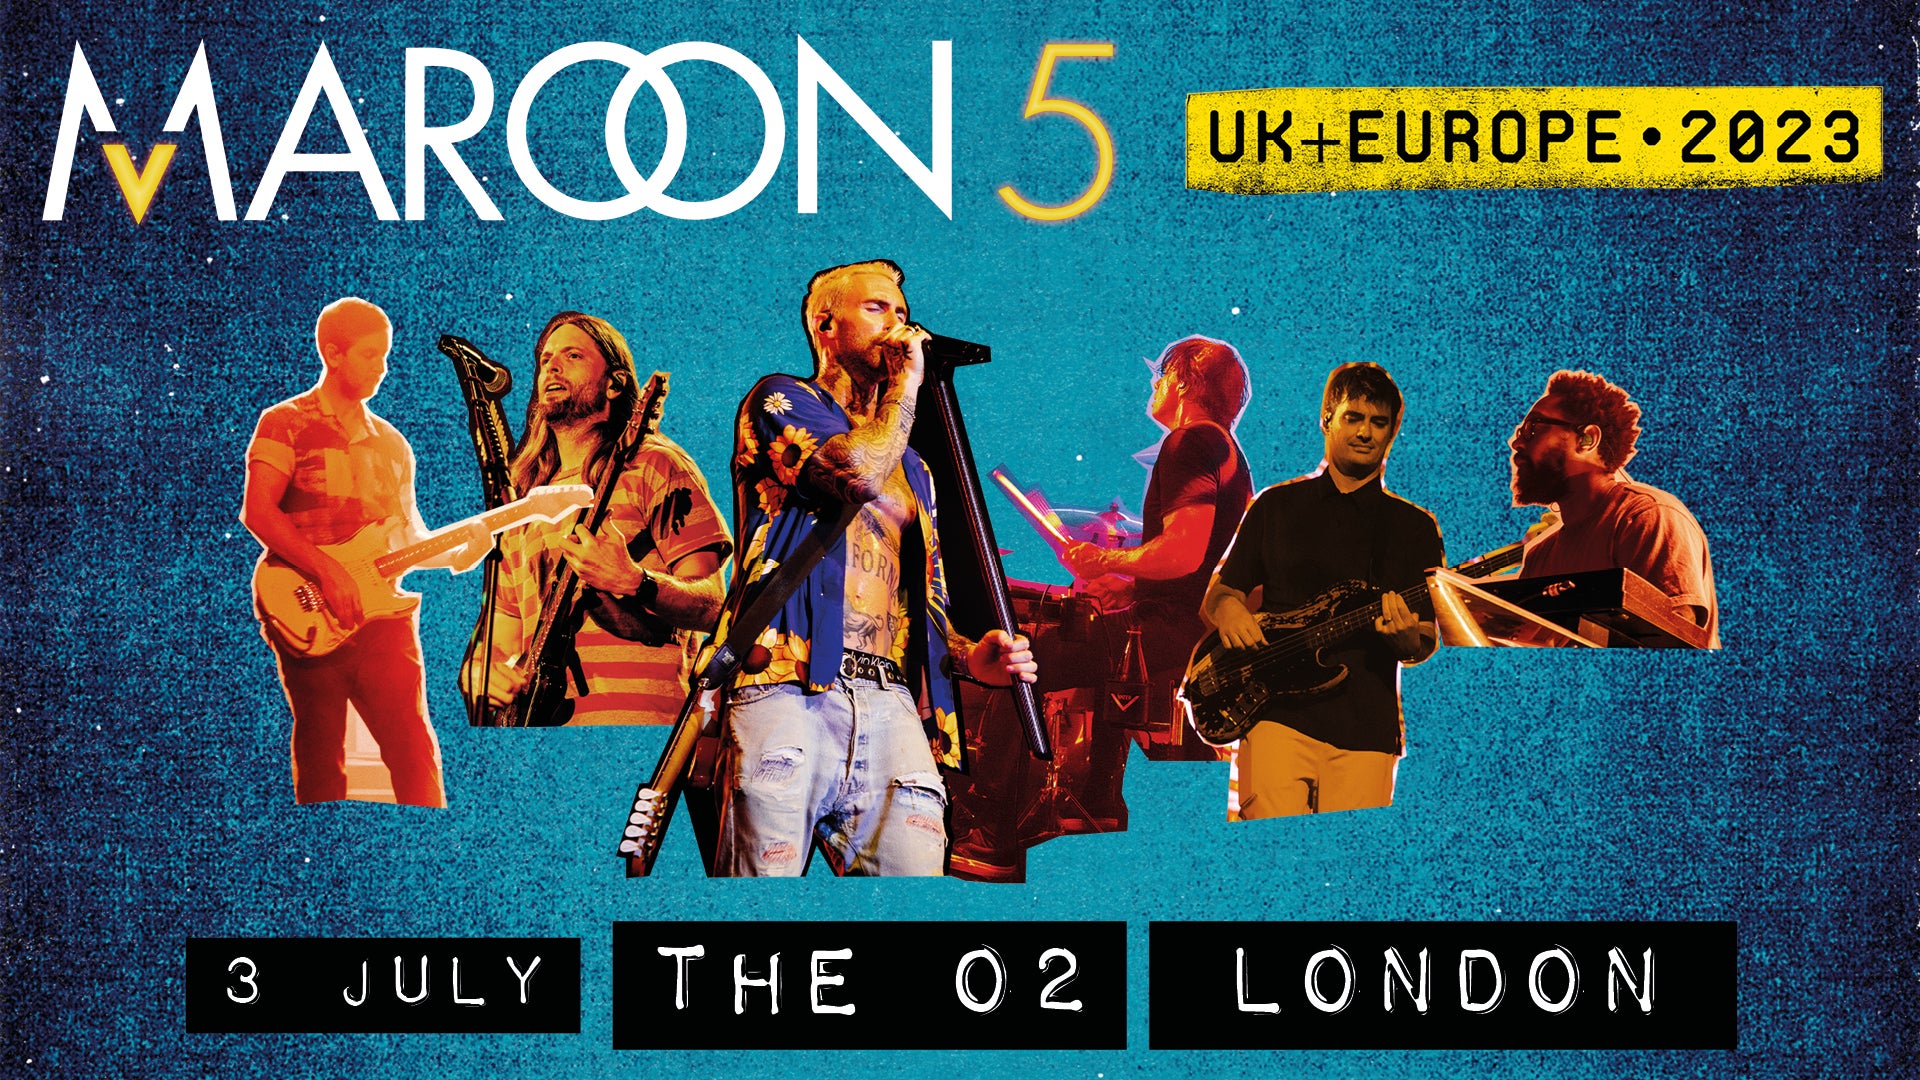 maroon 5 uk europe tour setlist